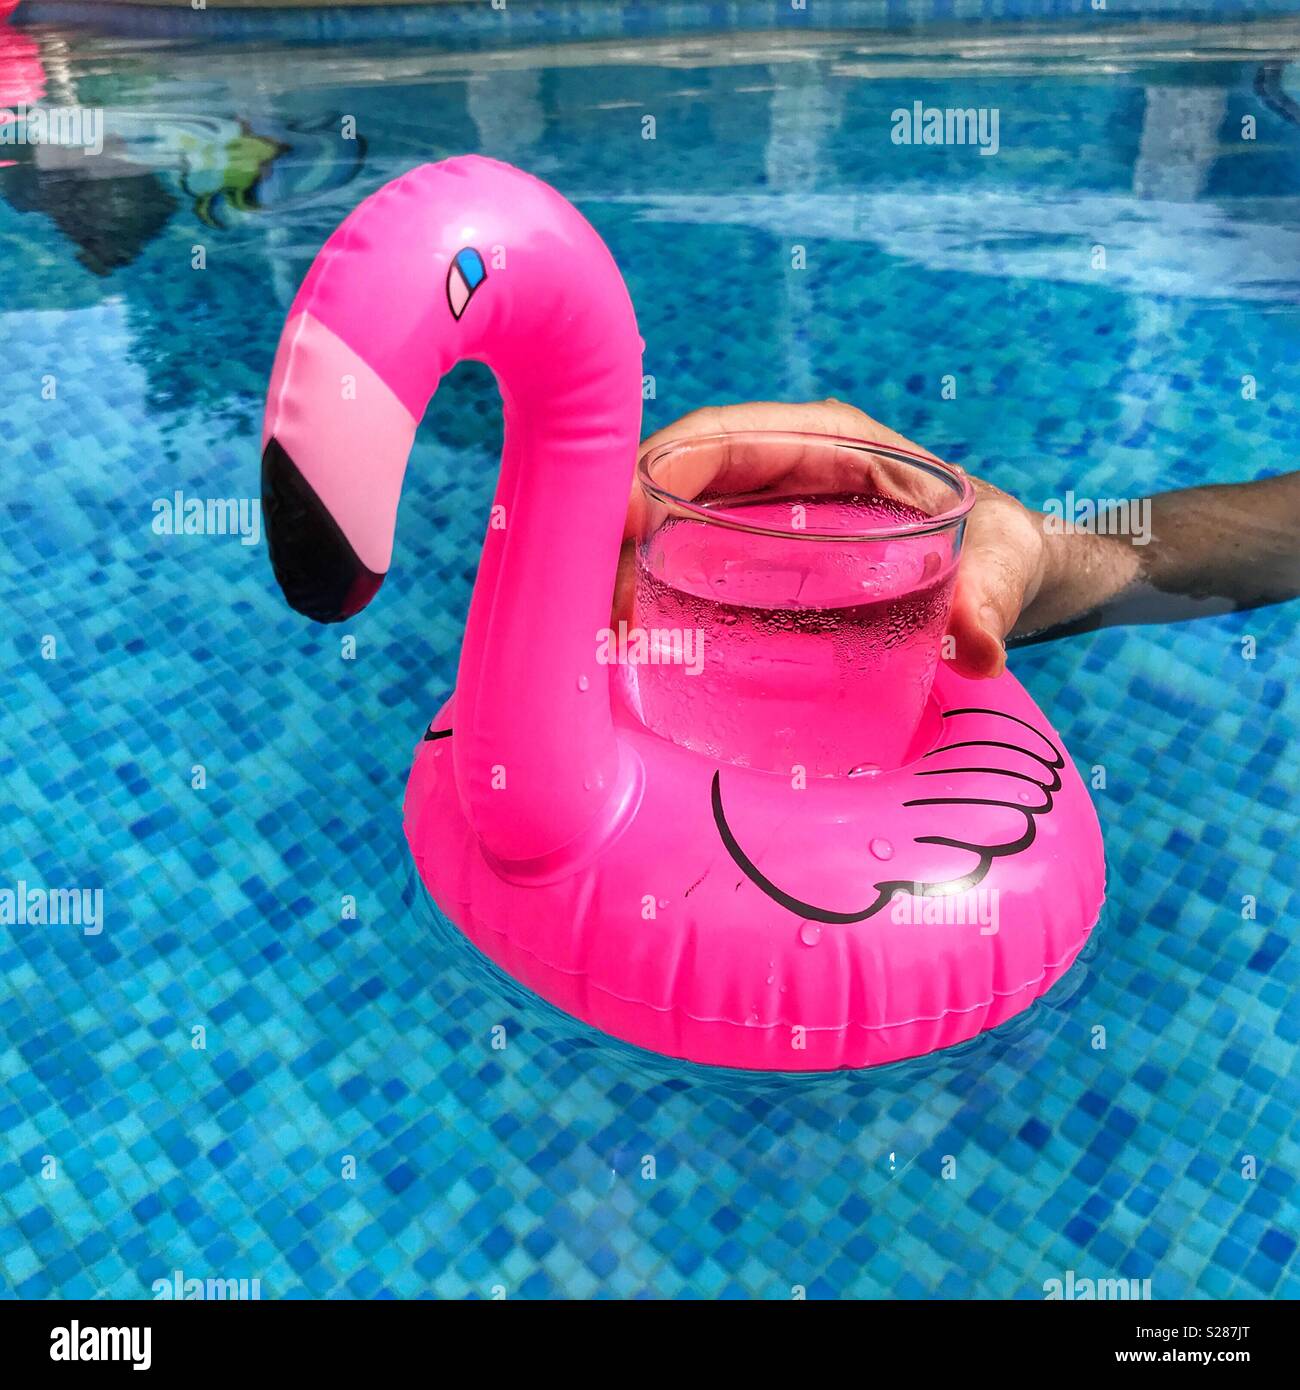 Woman's Hand erreichen für ein Glas in einem schwimmenden rosa Flamingo getränke Halter in einem Pool Stockfoto